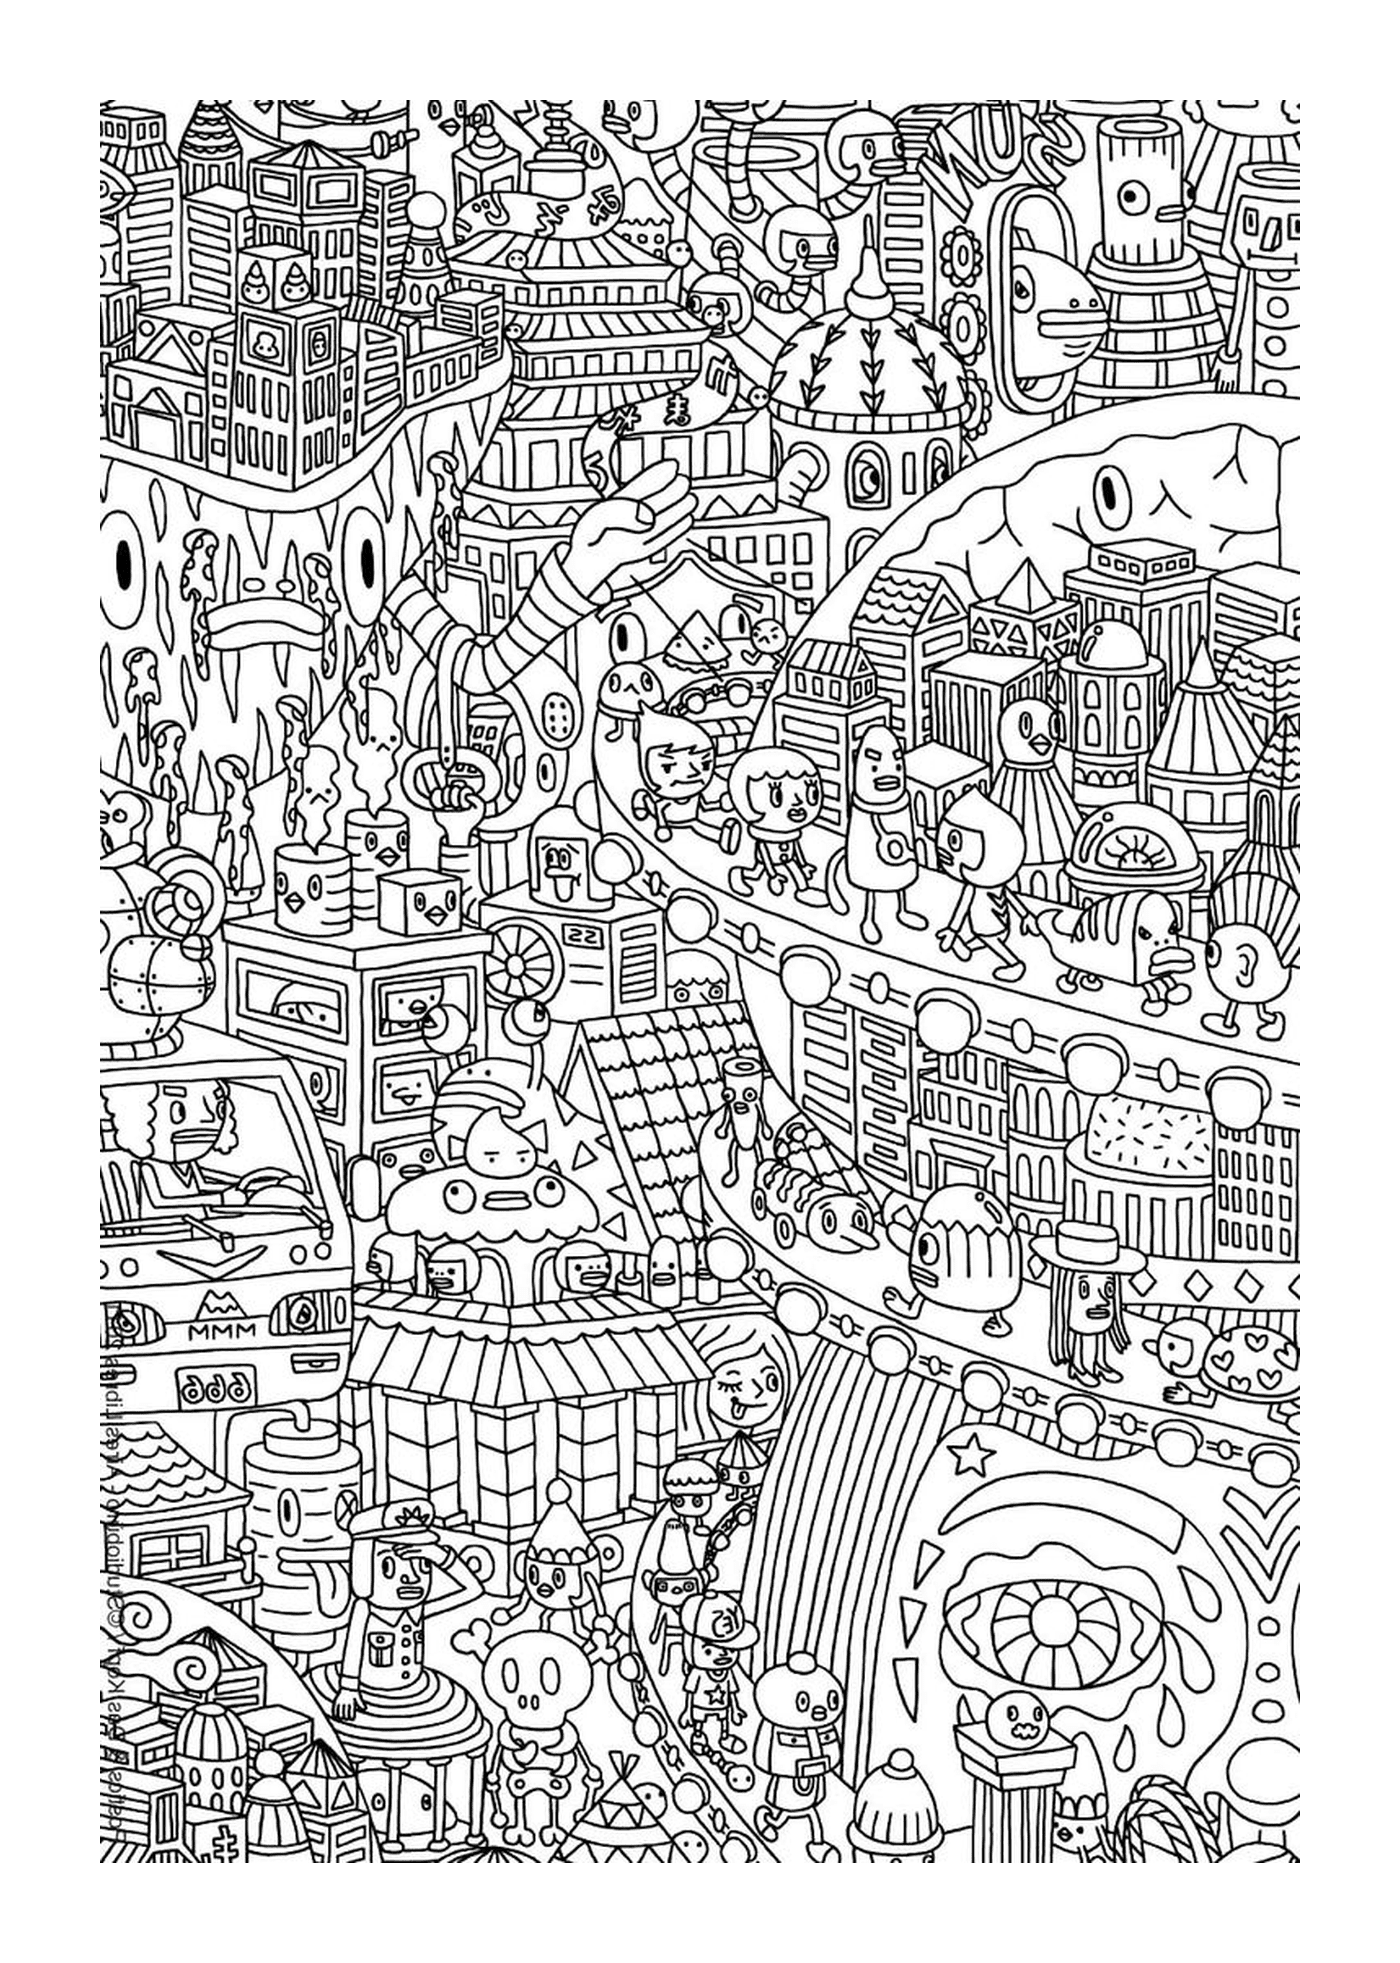  Dibujo de una ciudad 